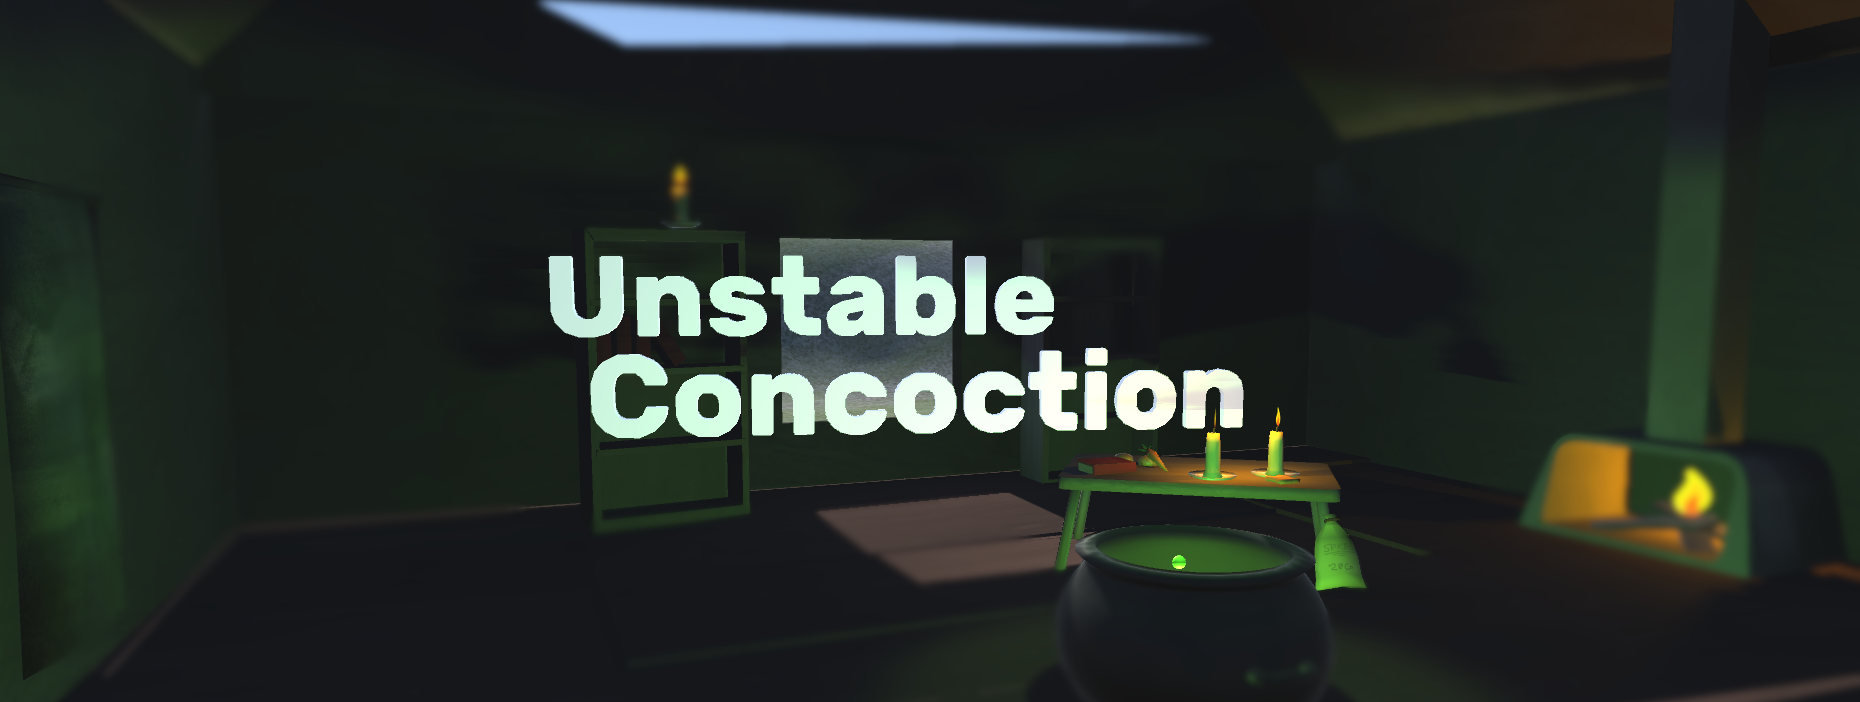 Unstable Concoction